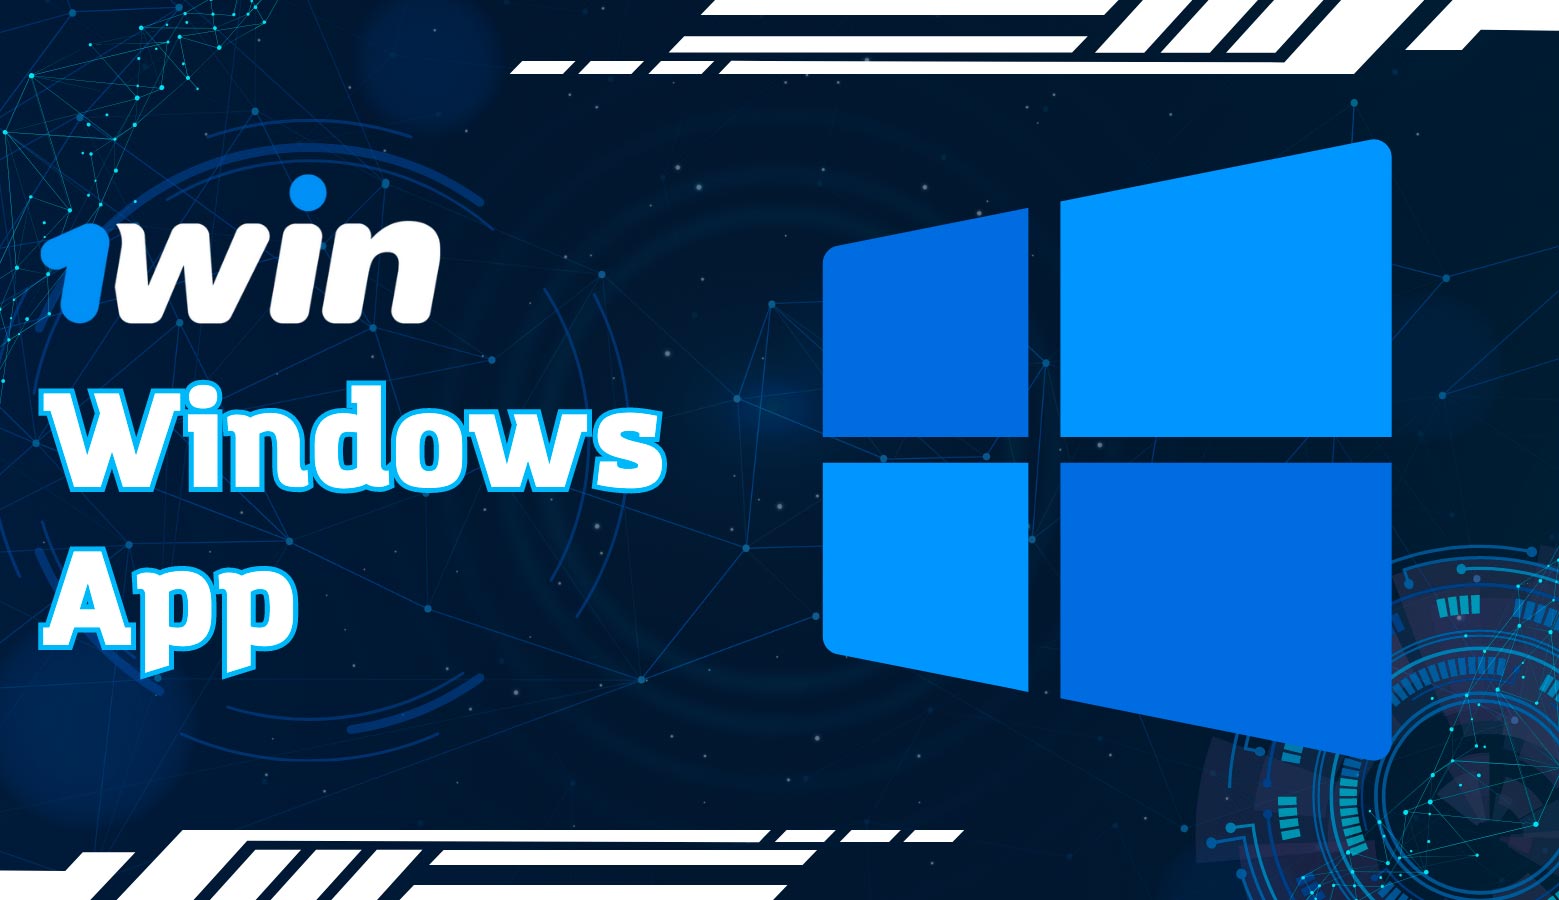 Los jugadores en México pueden descargar la aplicación de Windows por 1win